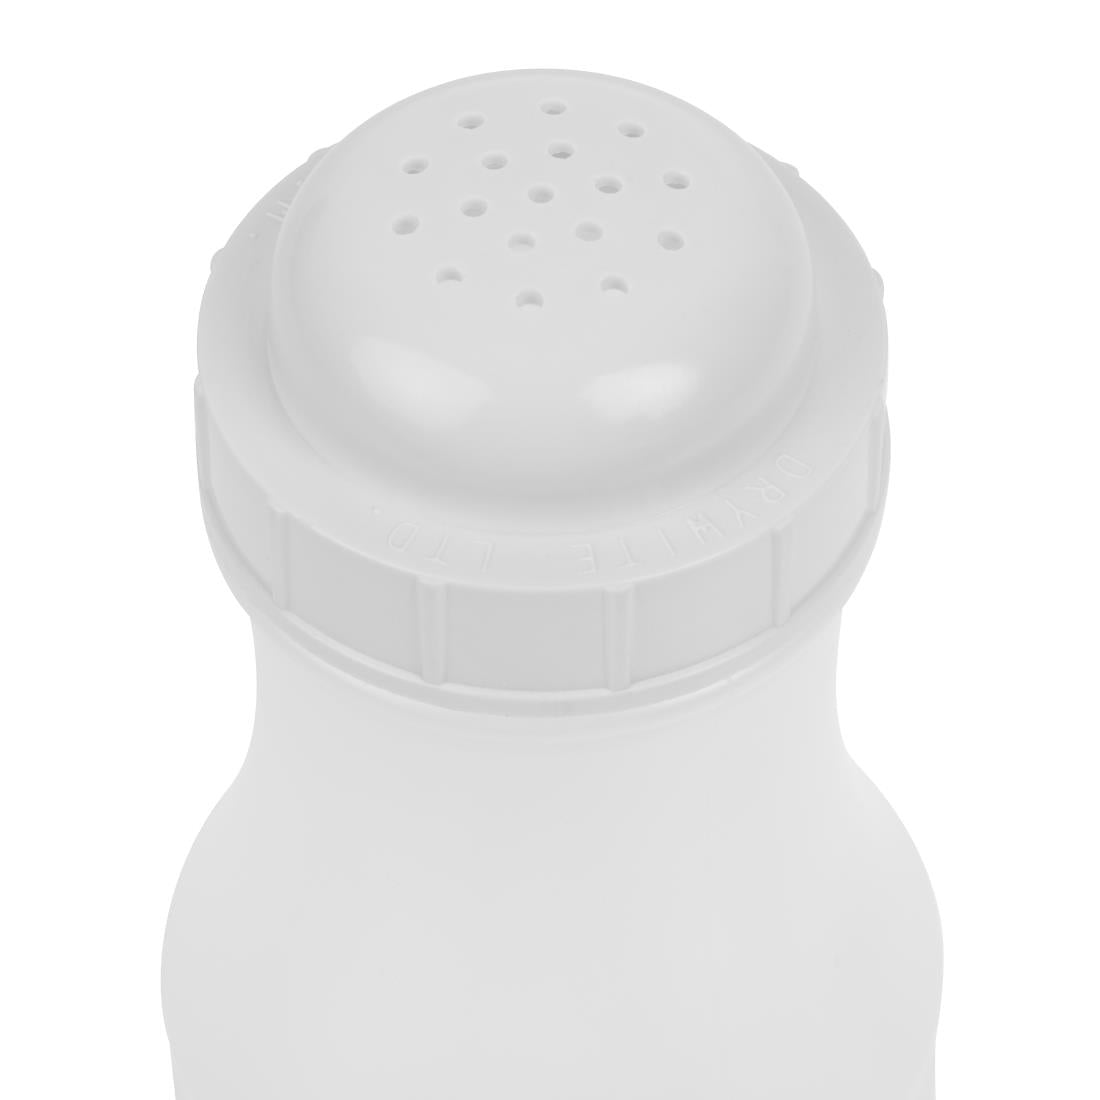 S469 Plastic Salt Shaker